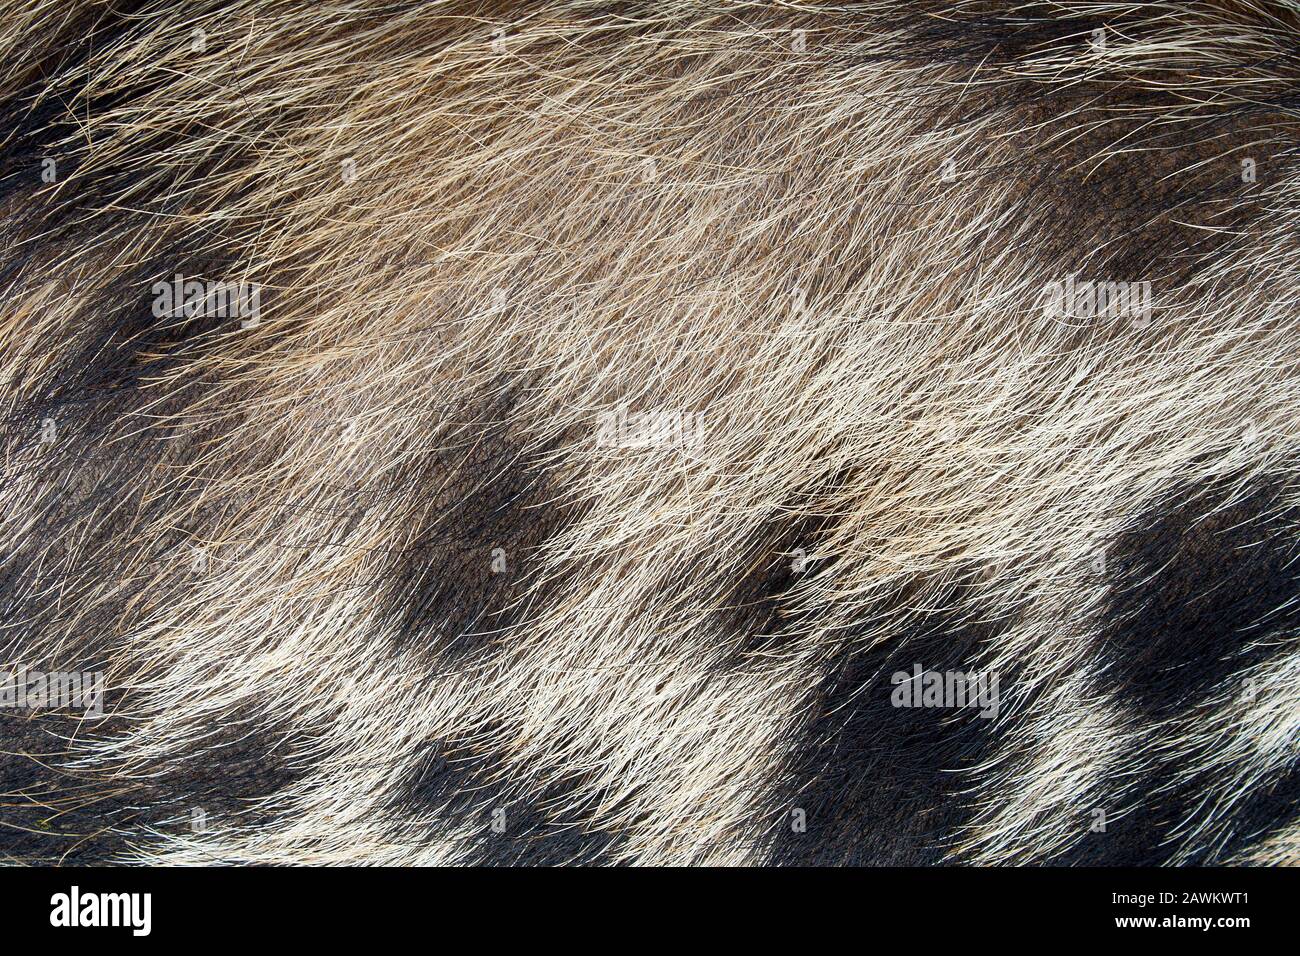 Pelle di maiale immagini e fotografie stock ad alta risoluzione - Alamy